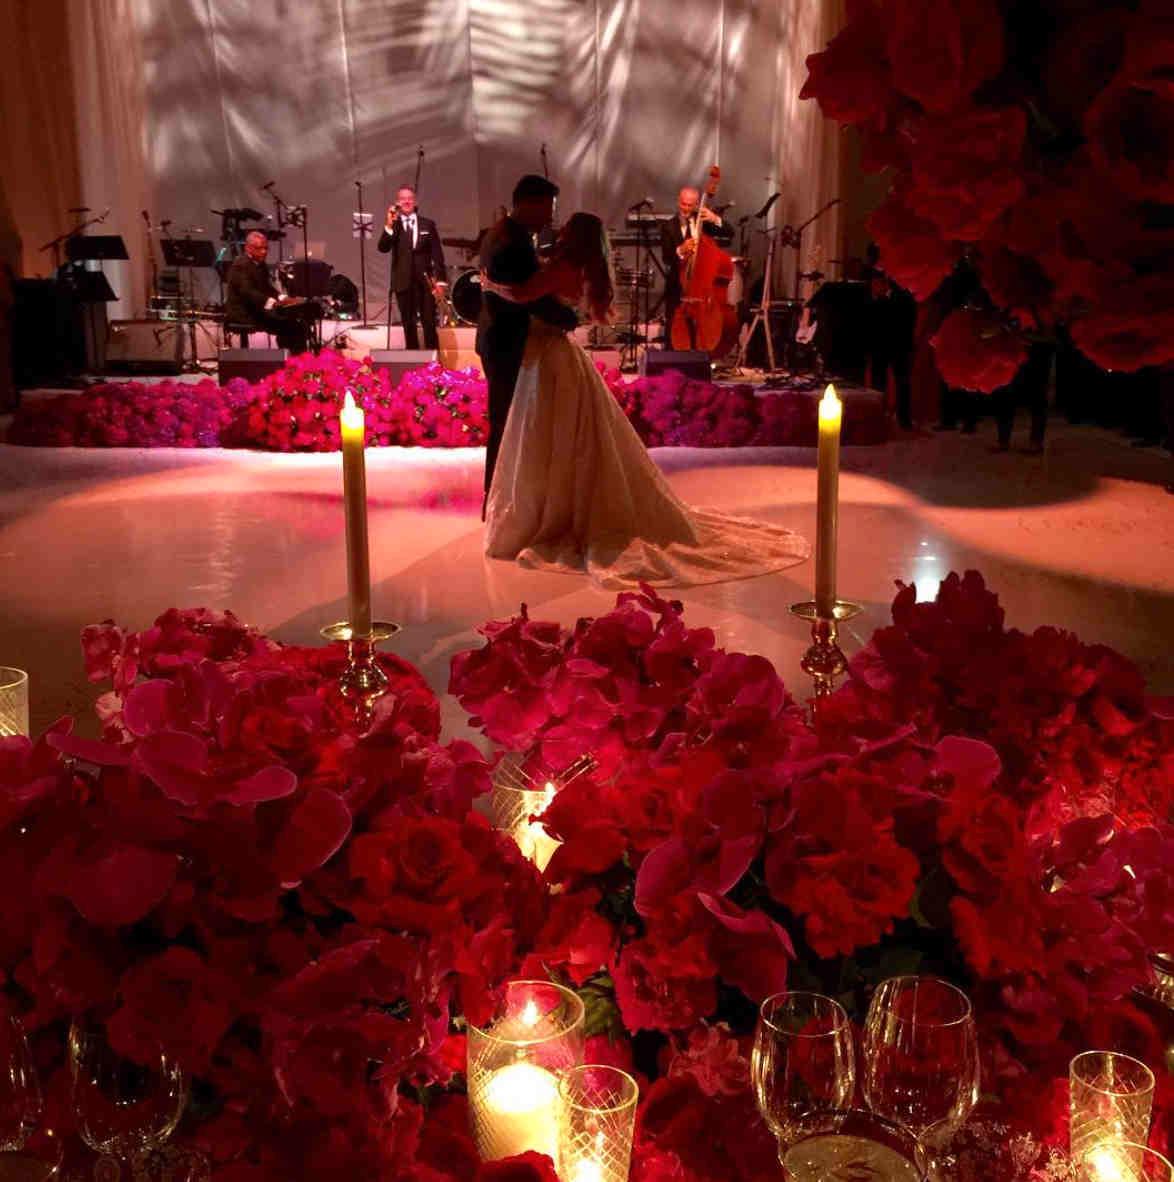 Världens vackraste par dansar bröllopsvals i ett rum fyllt av jättefina blommor.